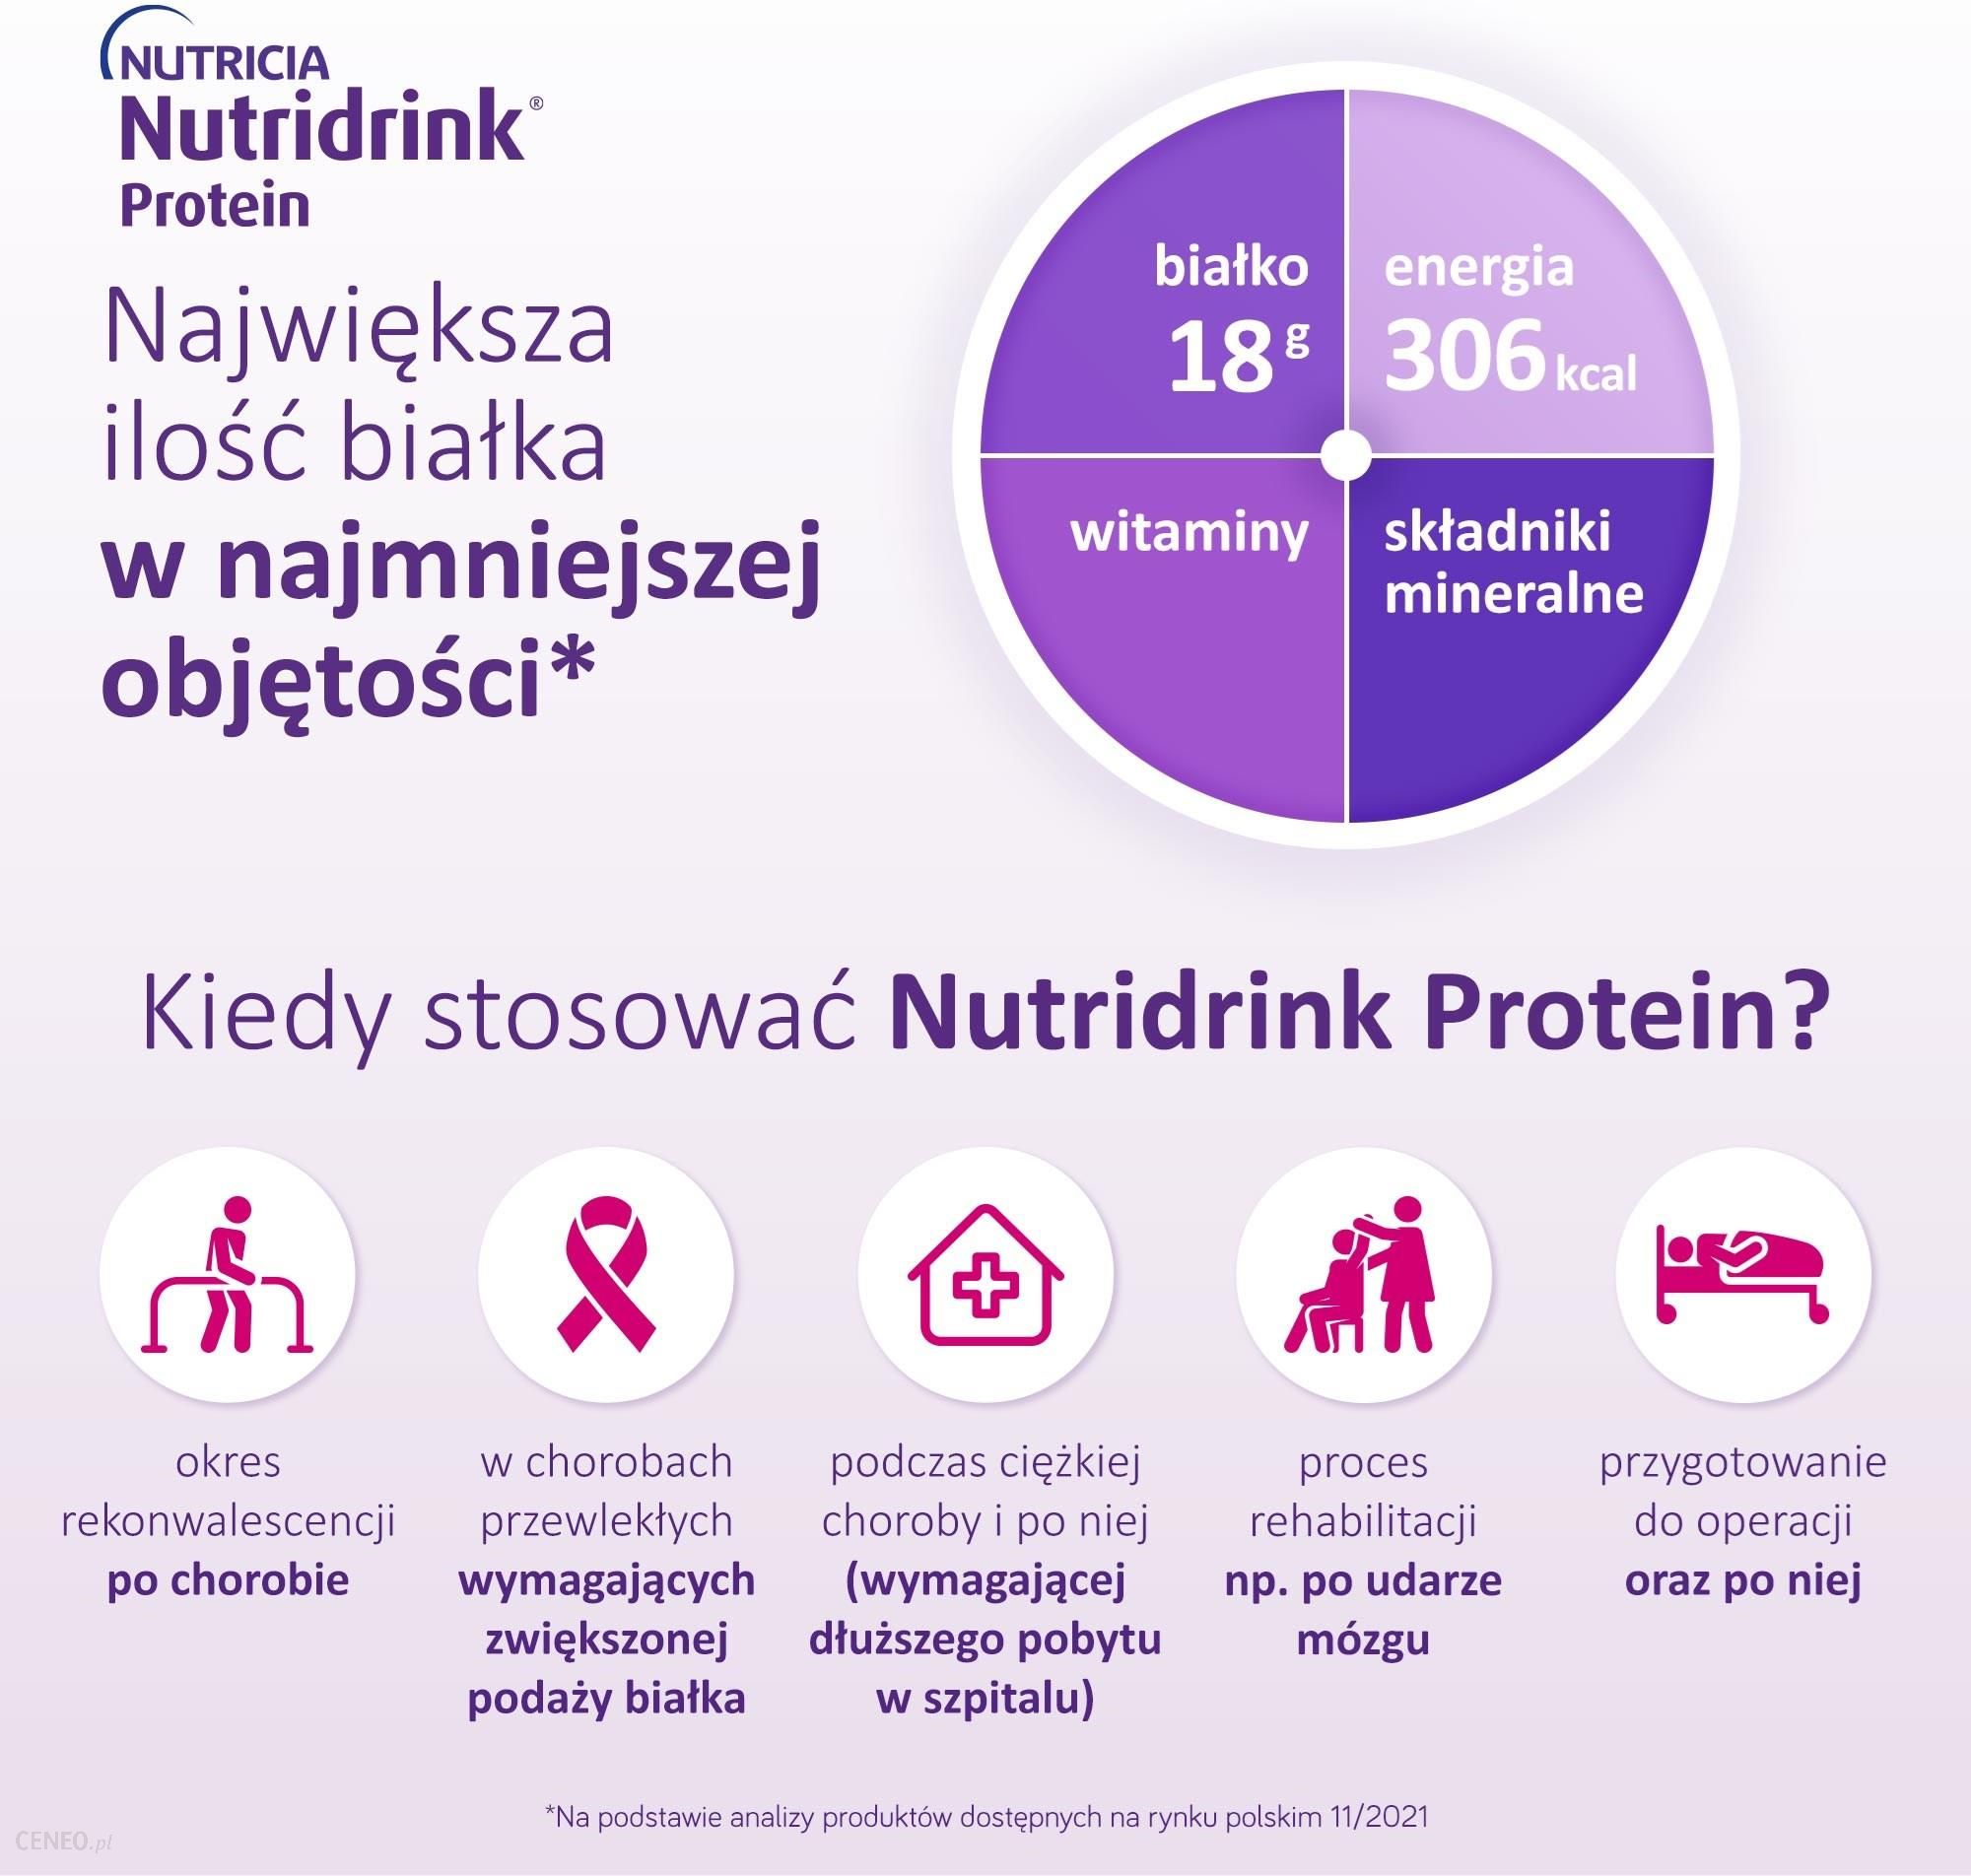 Nutridrink Protein preparat odżywczy smak mokka 4X125ml